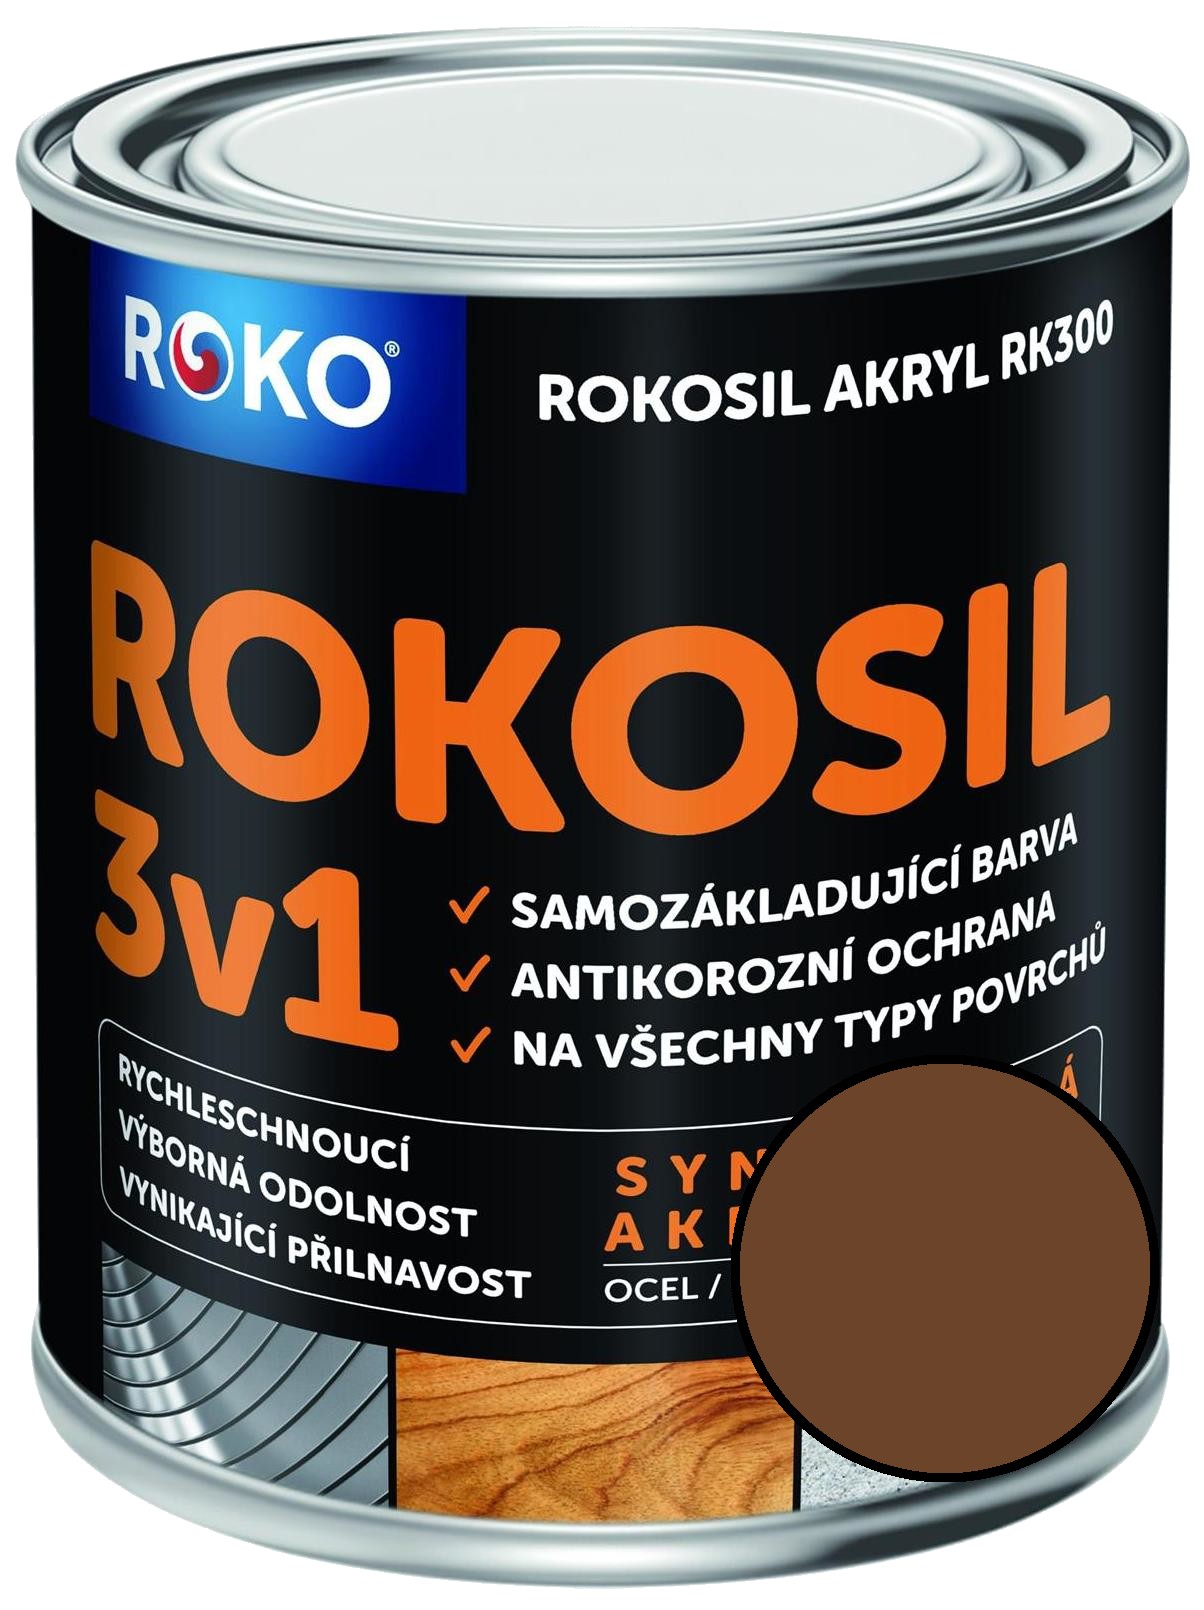 Barva samozákladující Rokosil akryl 3v1 RK 300 2430 hnědá střední, 0,6 l